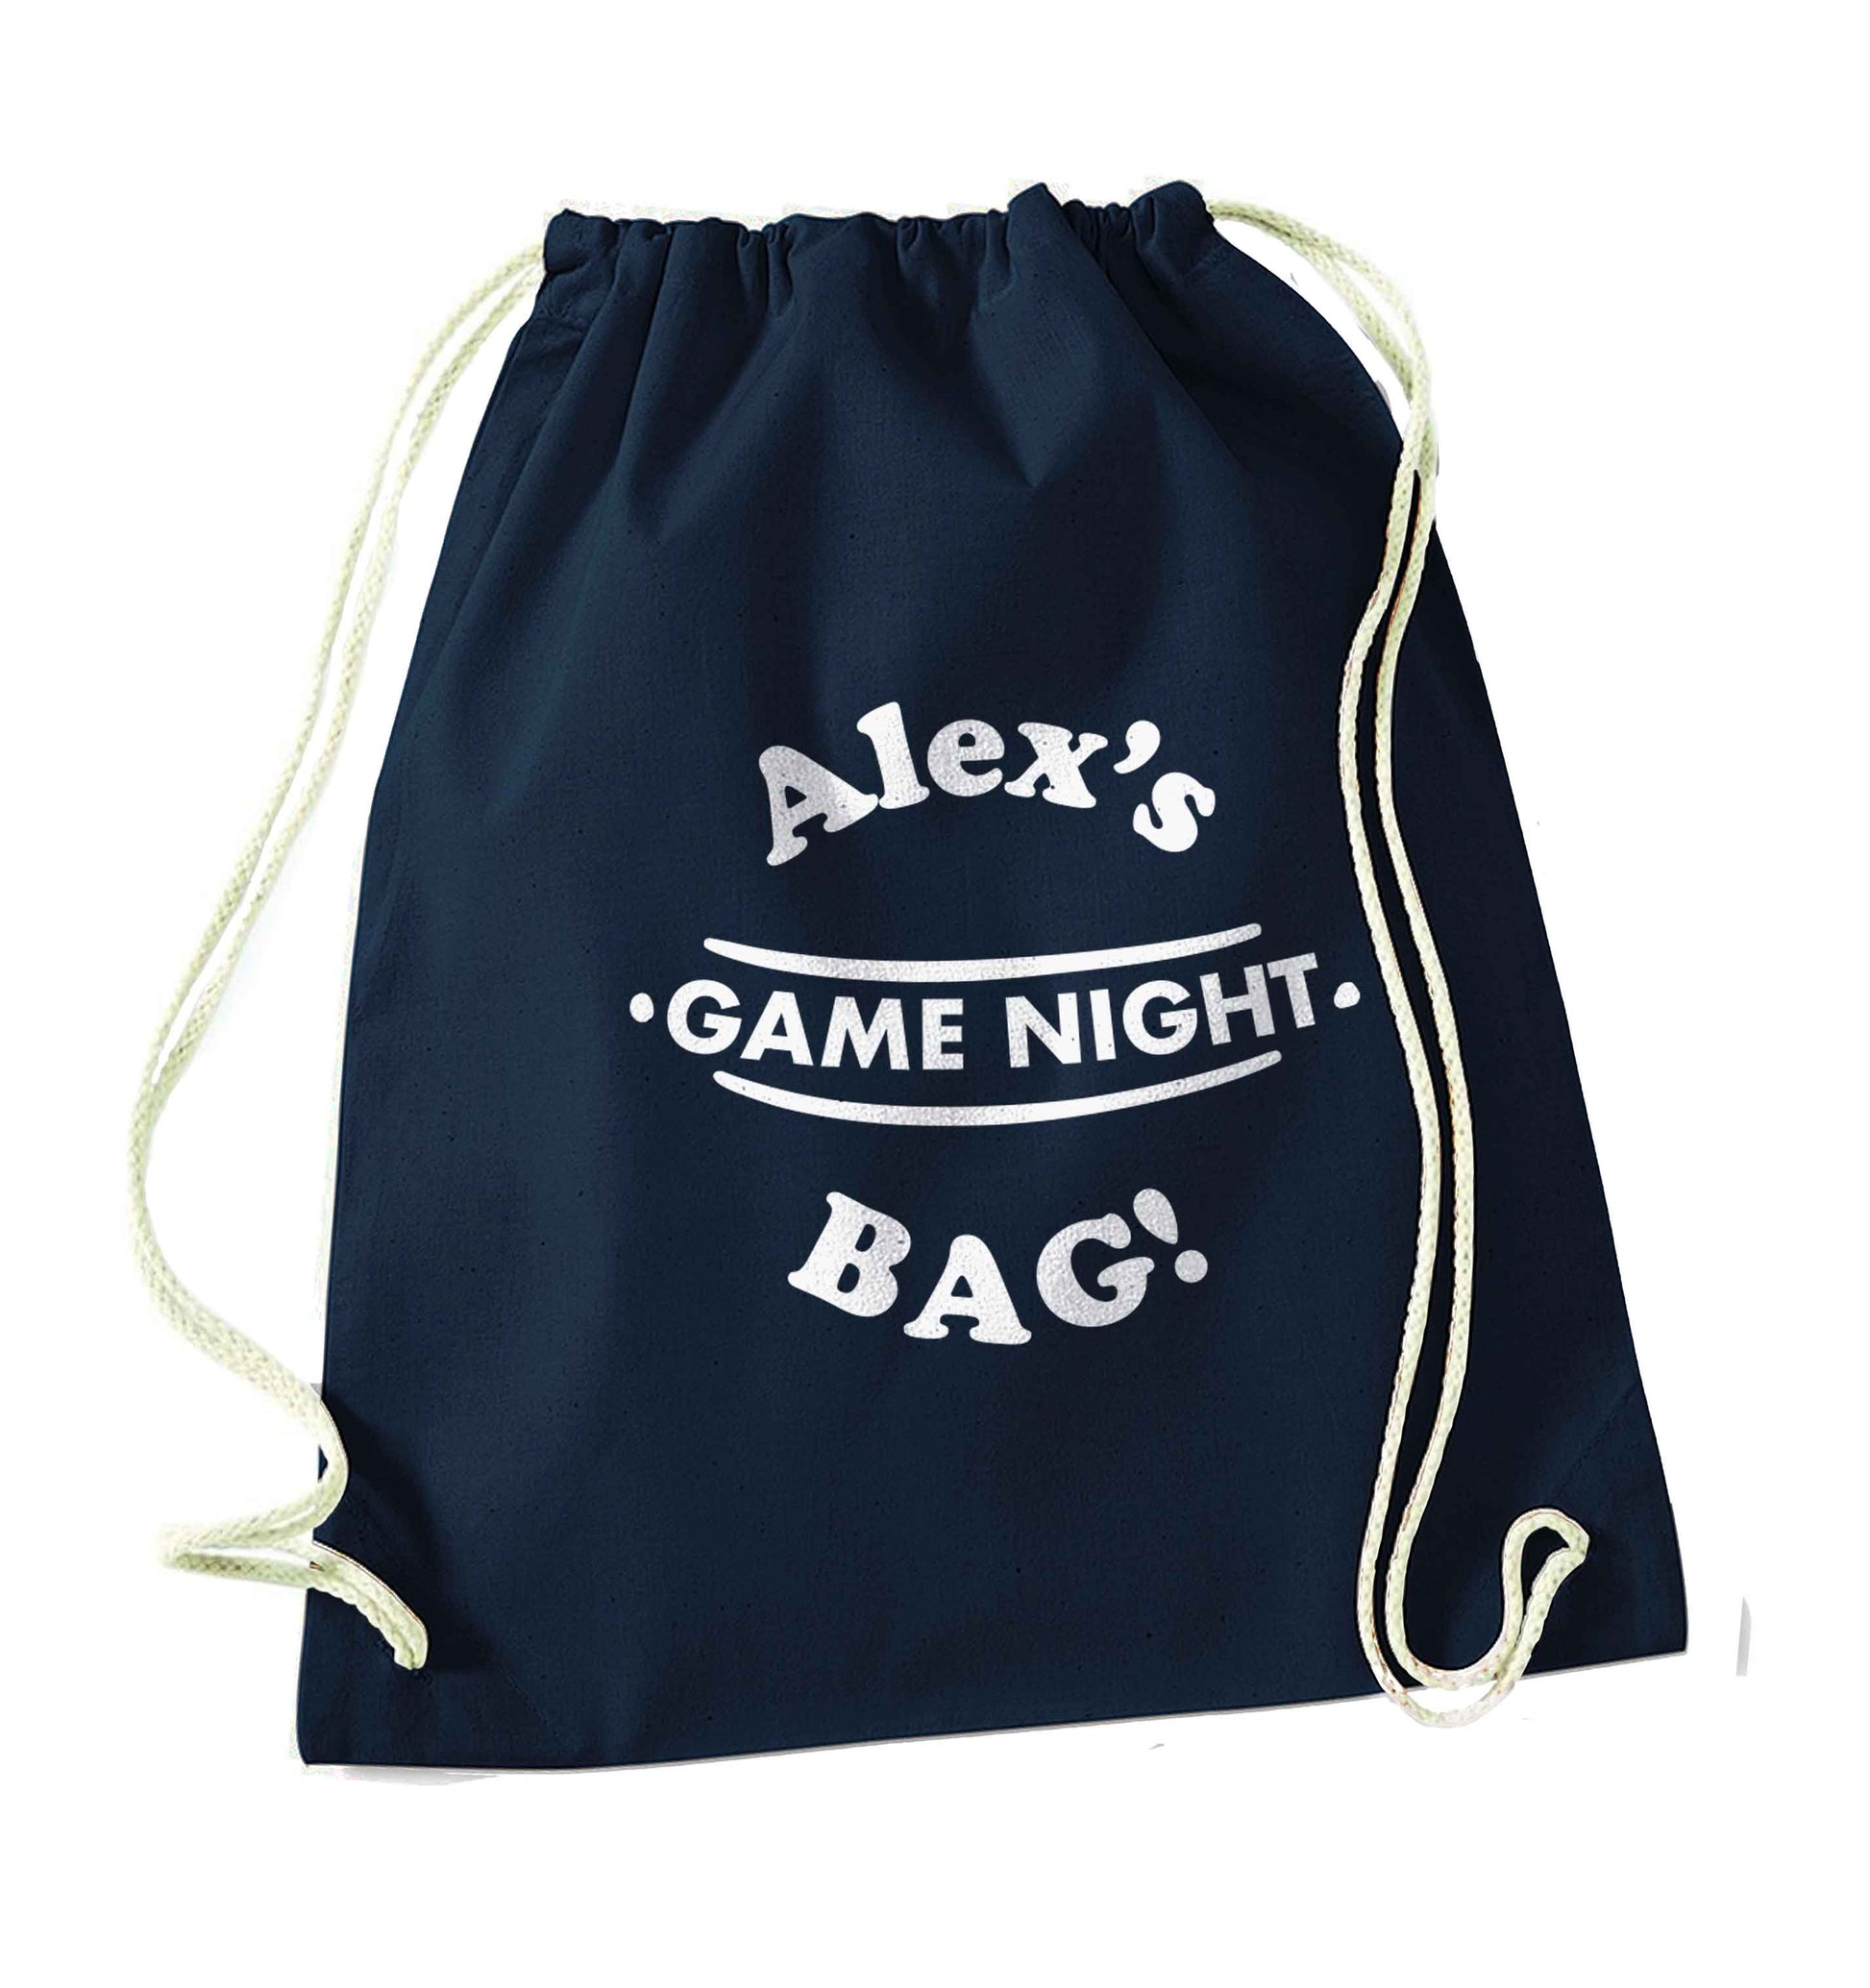 Personalised game night bag navy drawstring bag